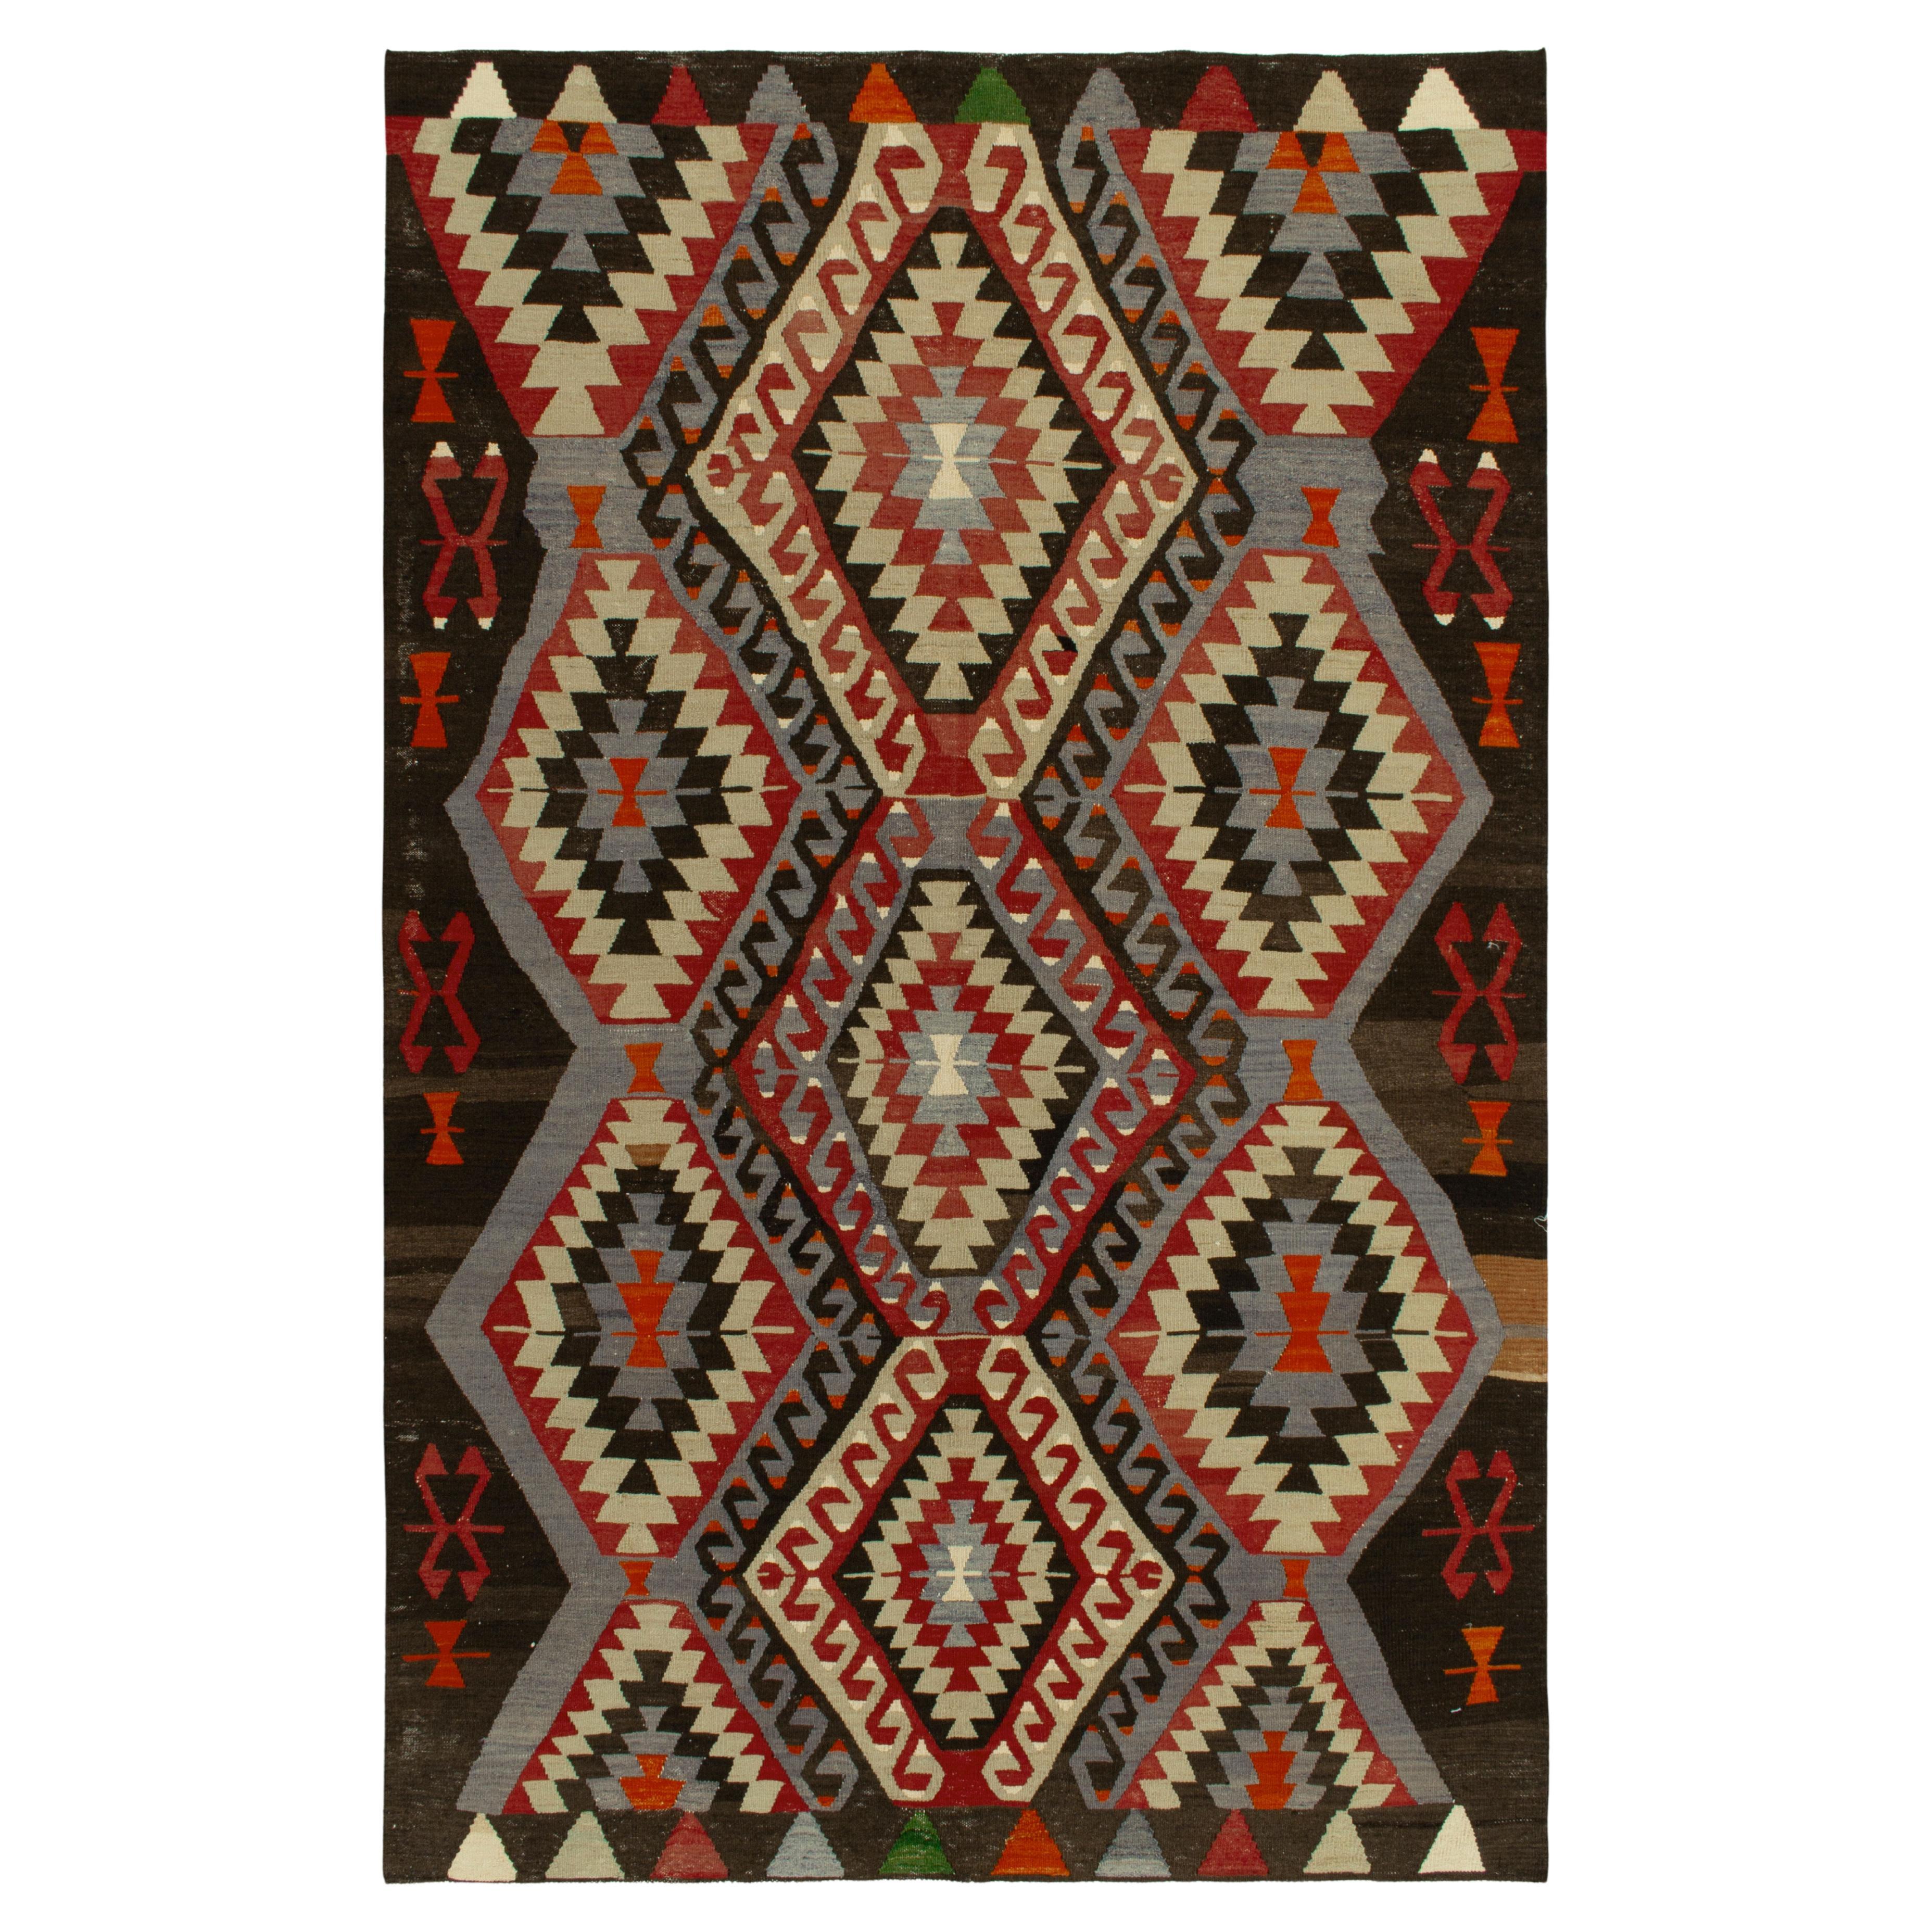 1940s Vintage Kilim in Blue, Red and Beige-Brown Tribal pattern by Rug & Kilim